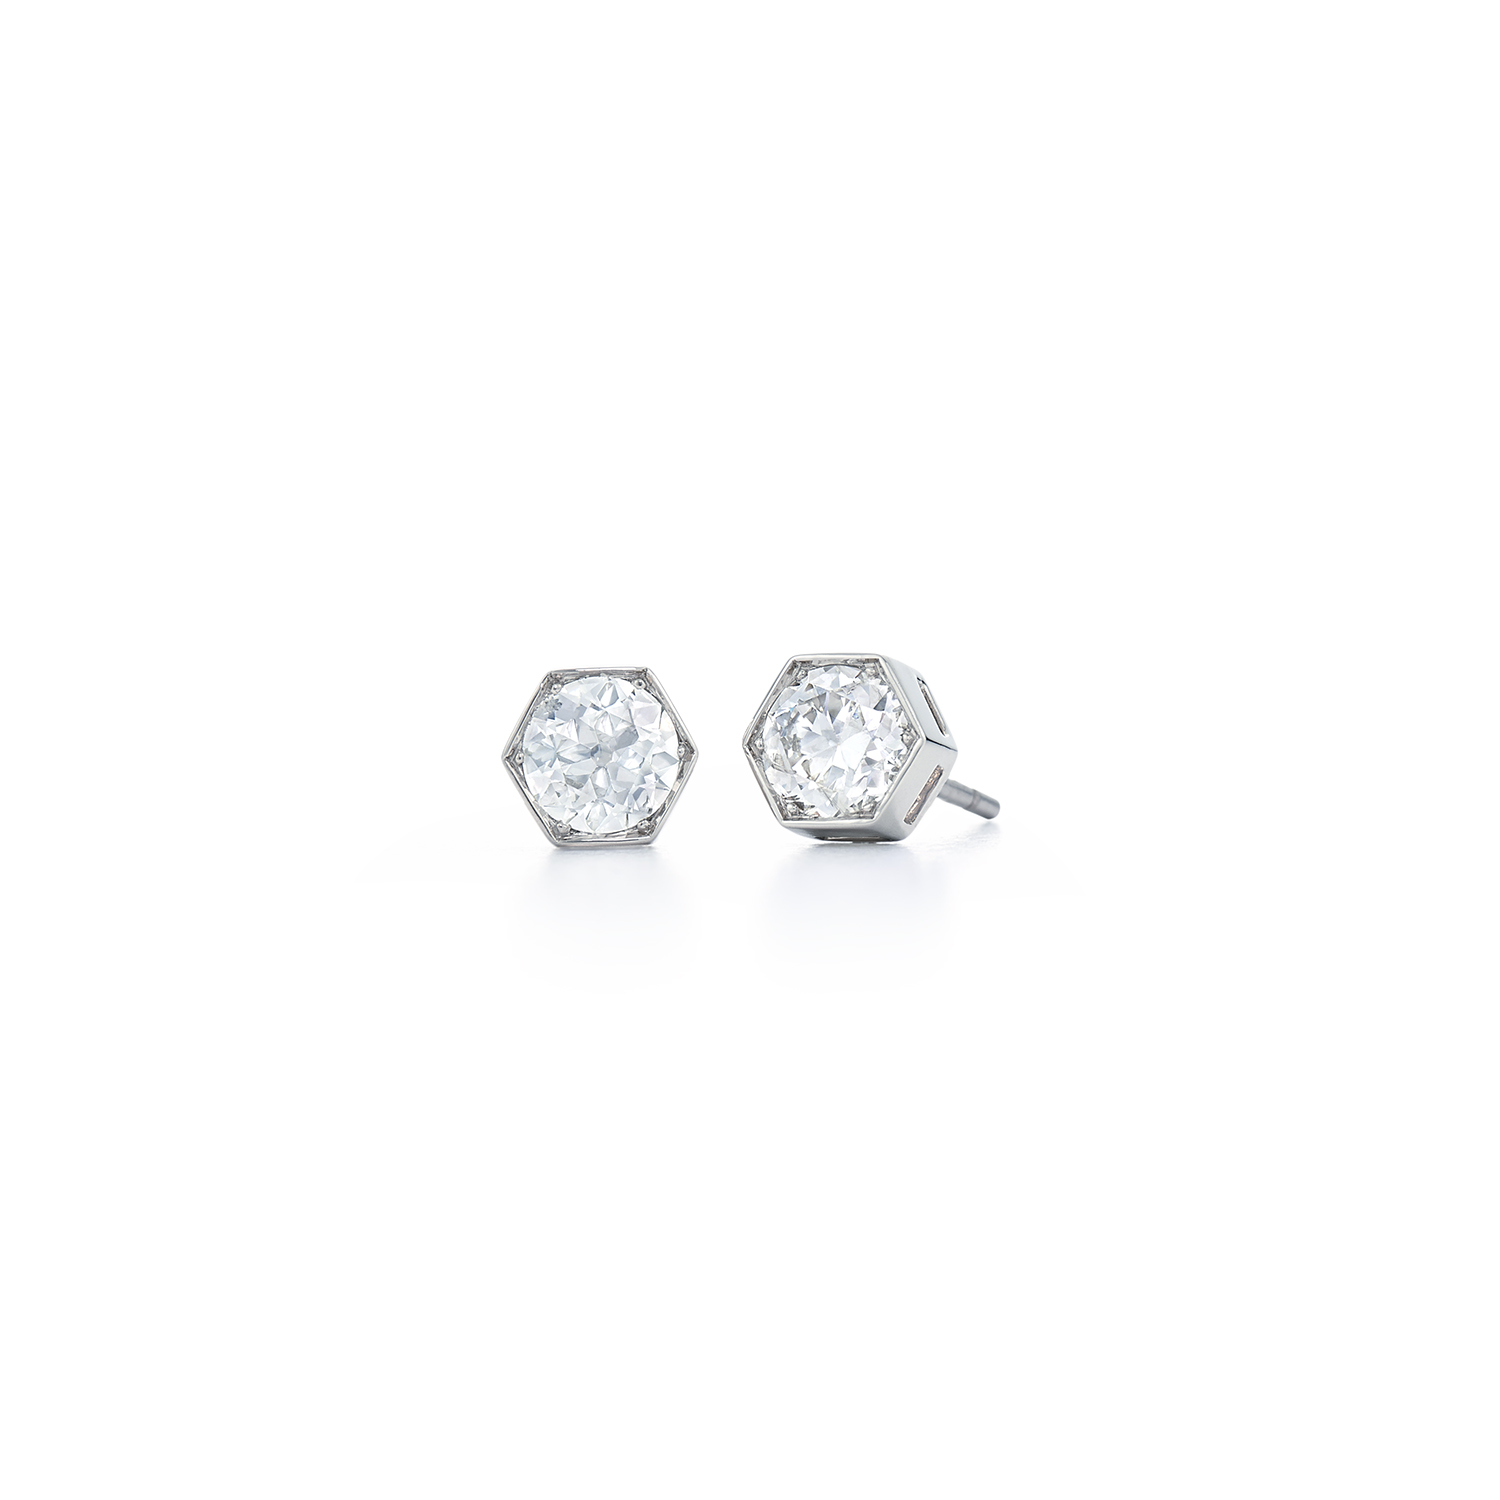 Signed Fred Leighton Hexagonal Diamond Stud Earrings E-1052FL-0-DIA-18KW